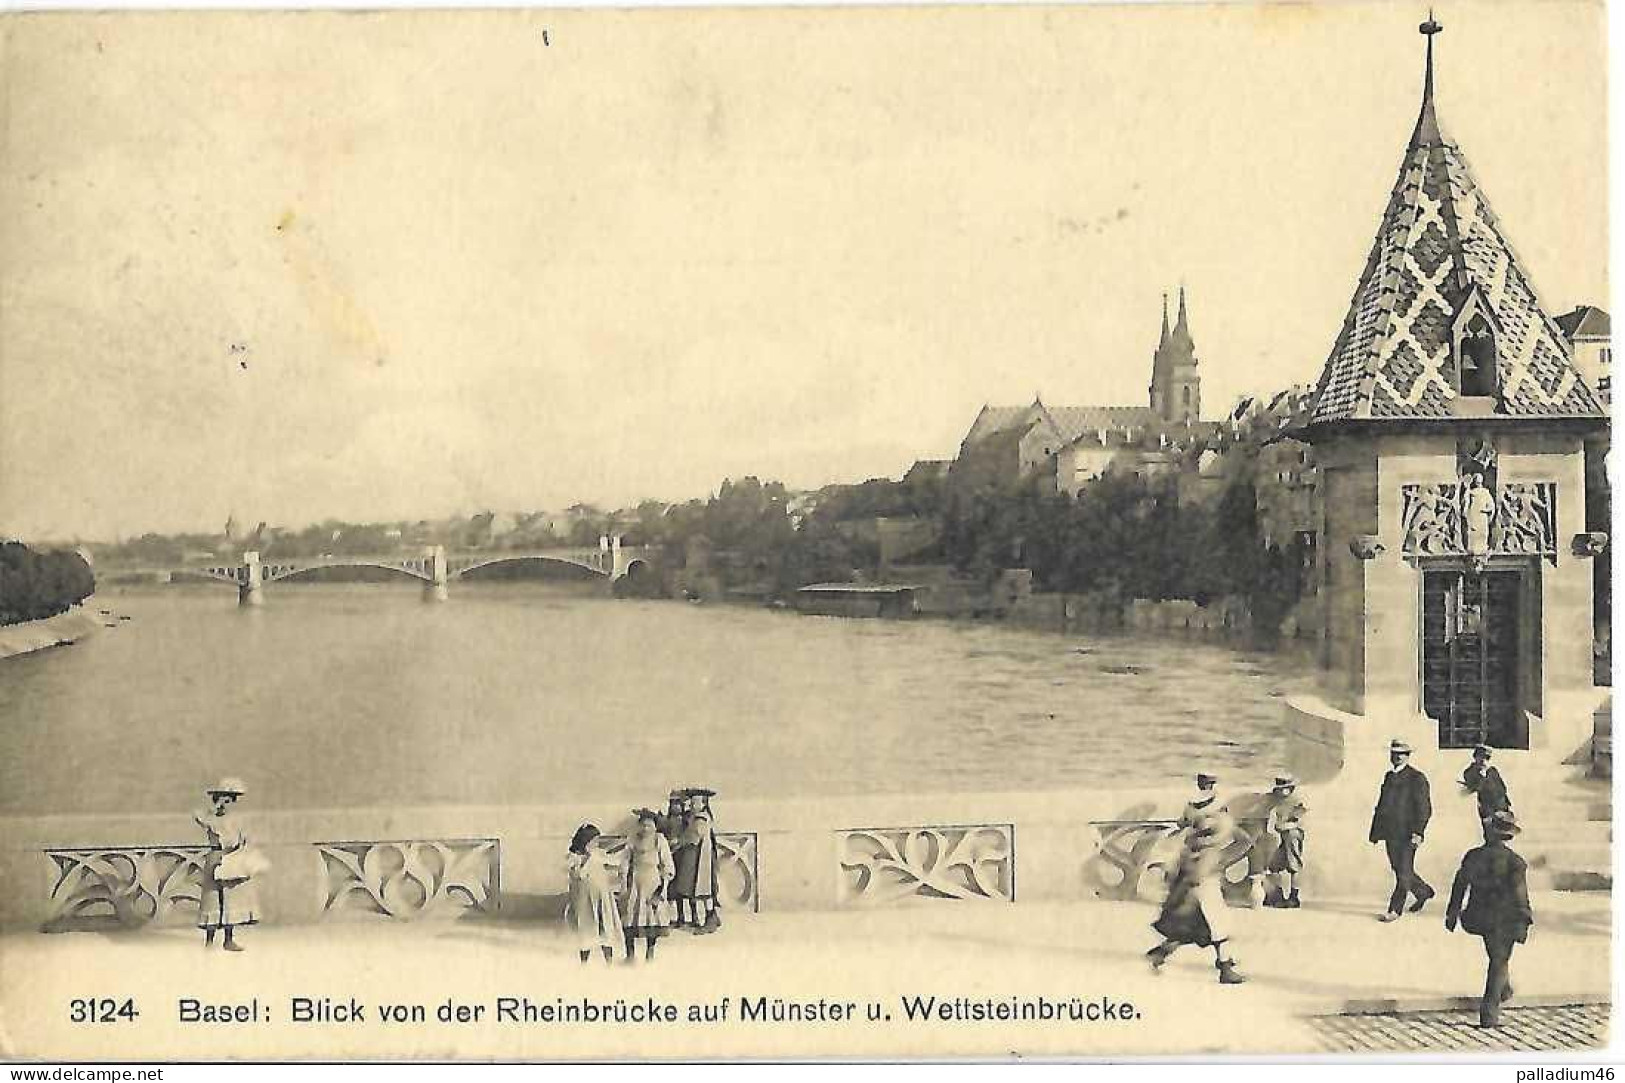 BS - BASEL - Blick Von Der Rheinbrücke Auf Münster U. Wettsteinbrücke - Circulé Le 03.04.1915 - Franco Suisse No 3124 - Basel